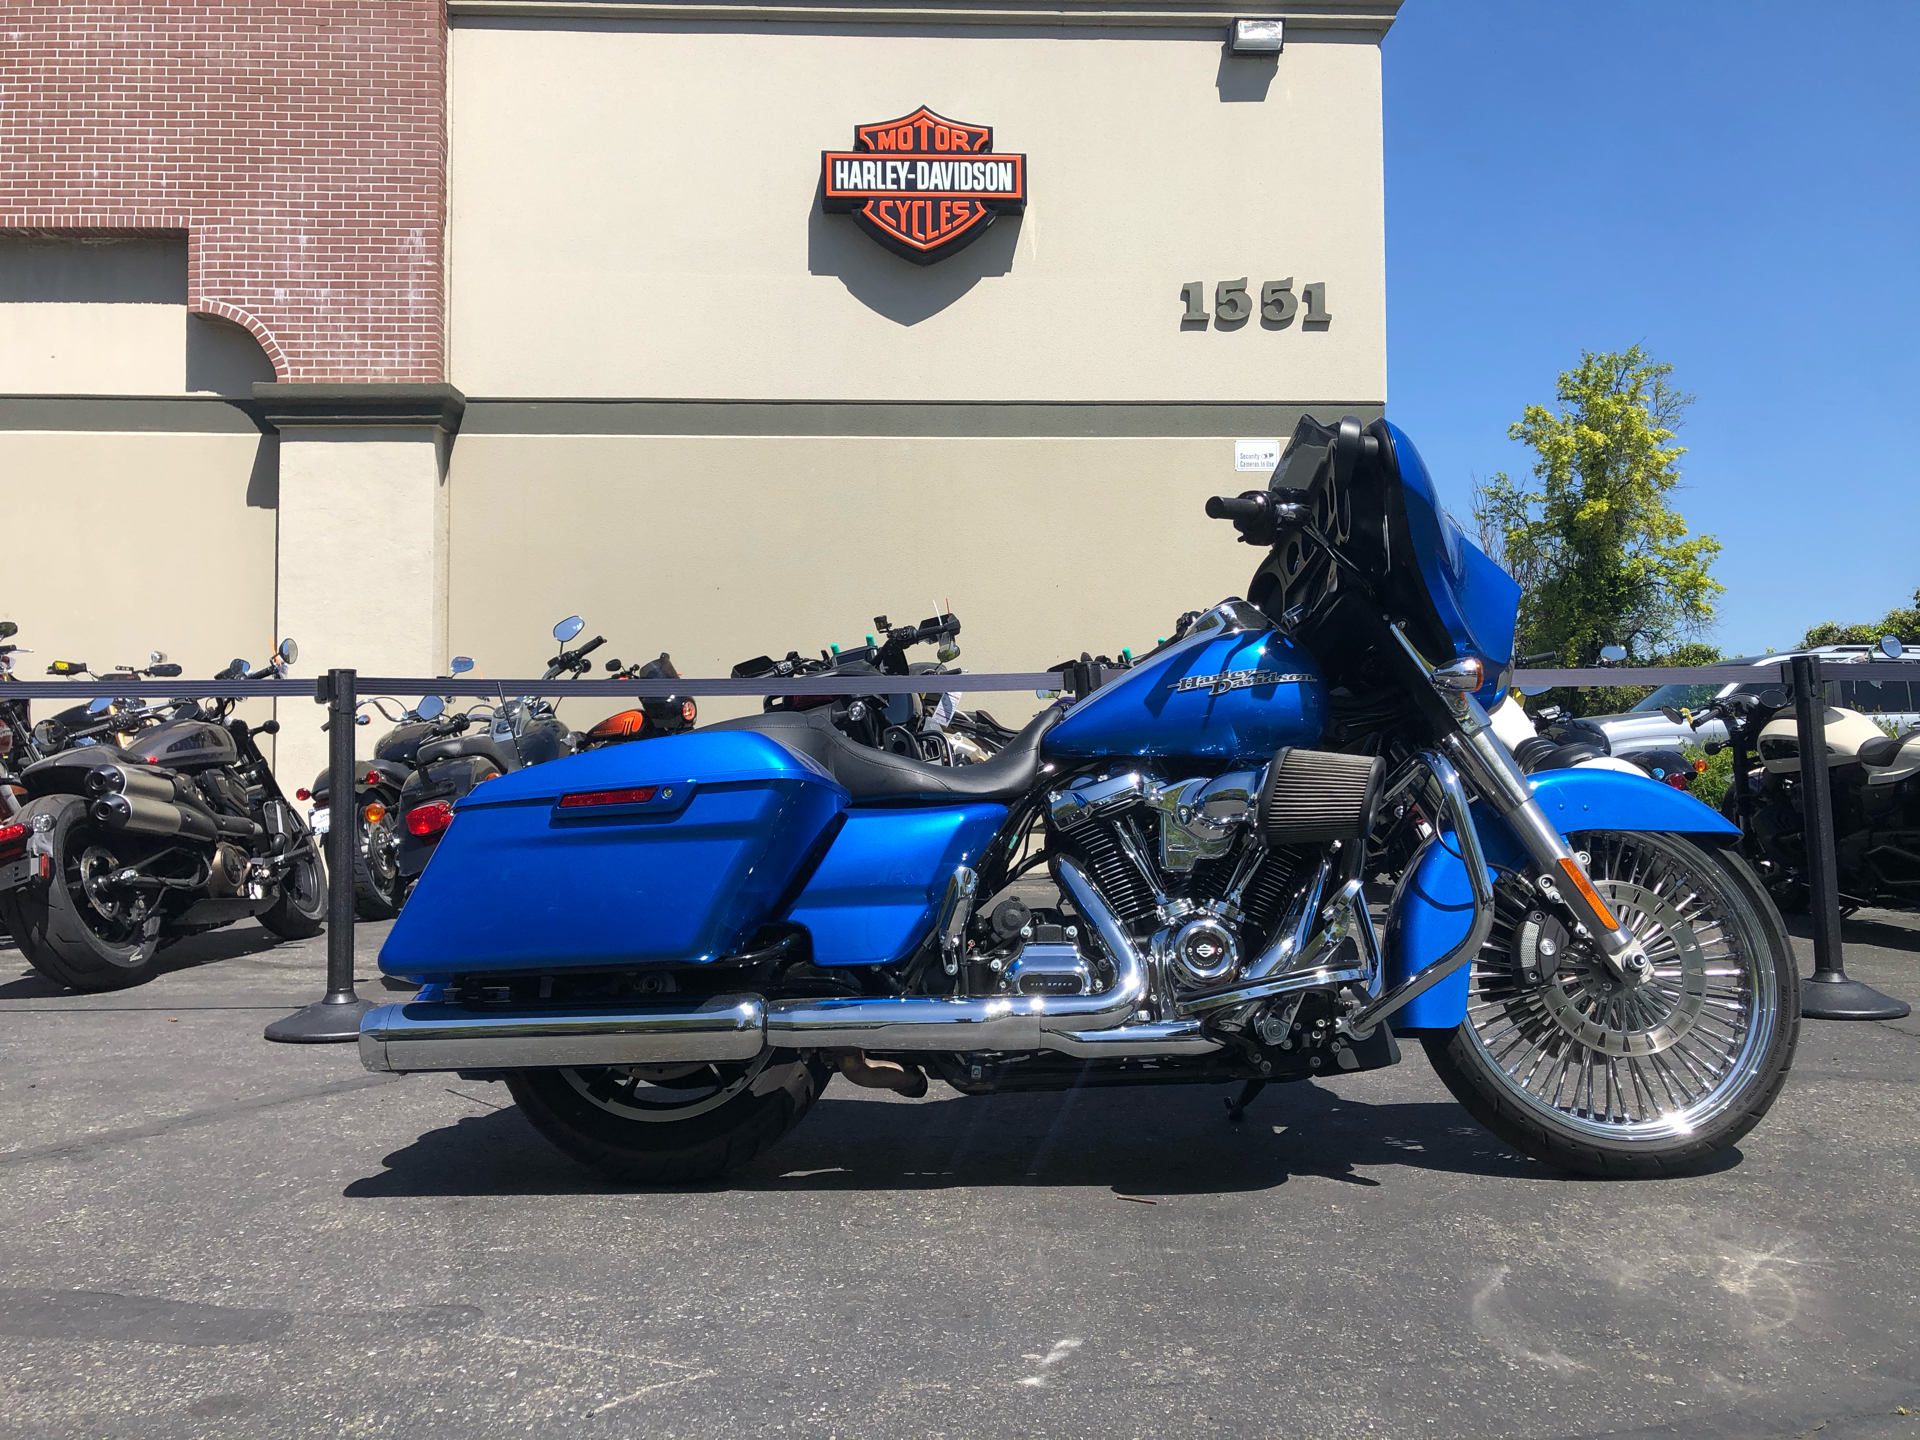 2018 Harley-Davidson Street Glide® in San Jose, California - Photo 1